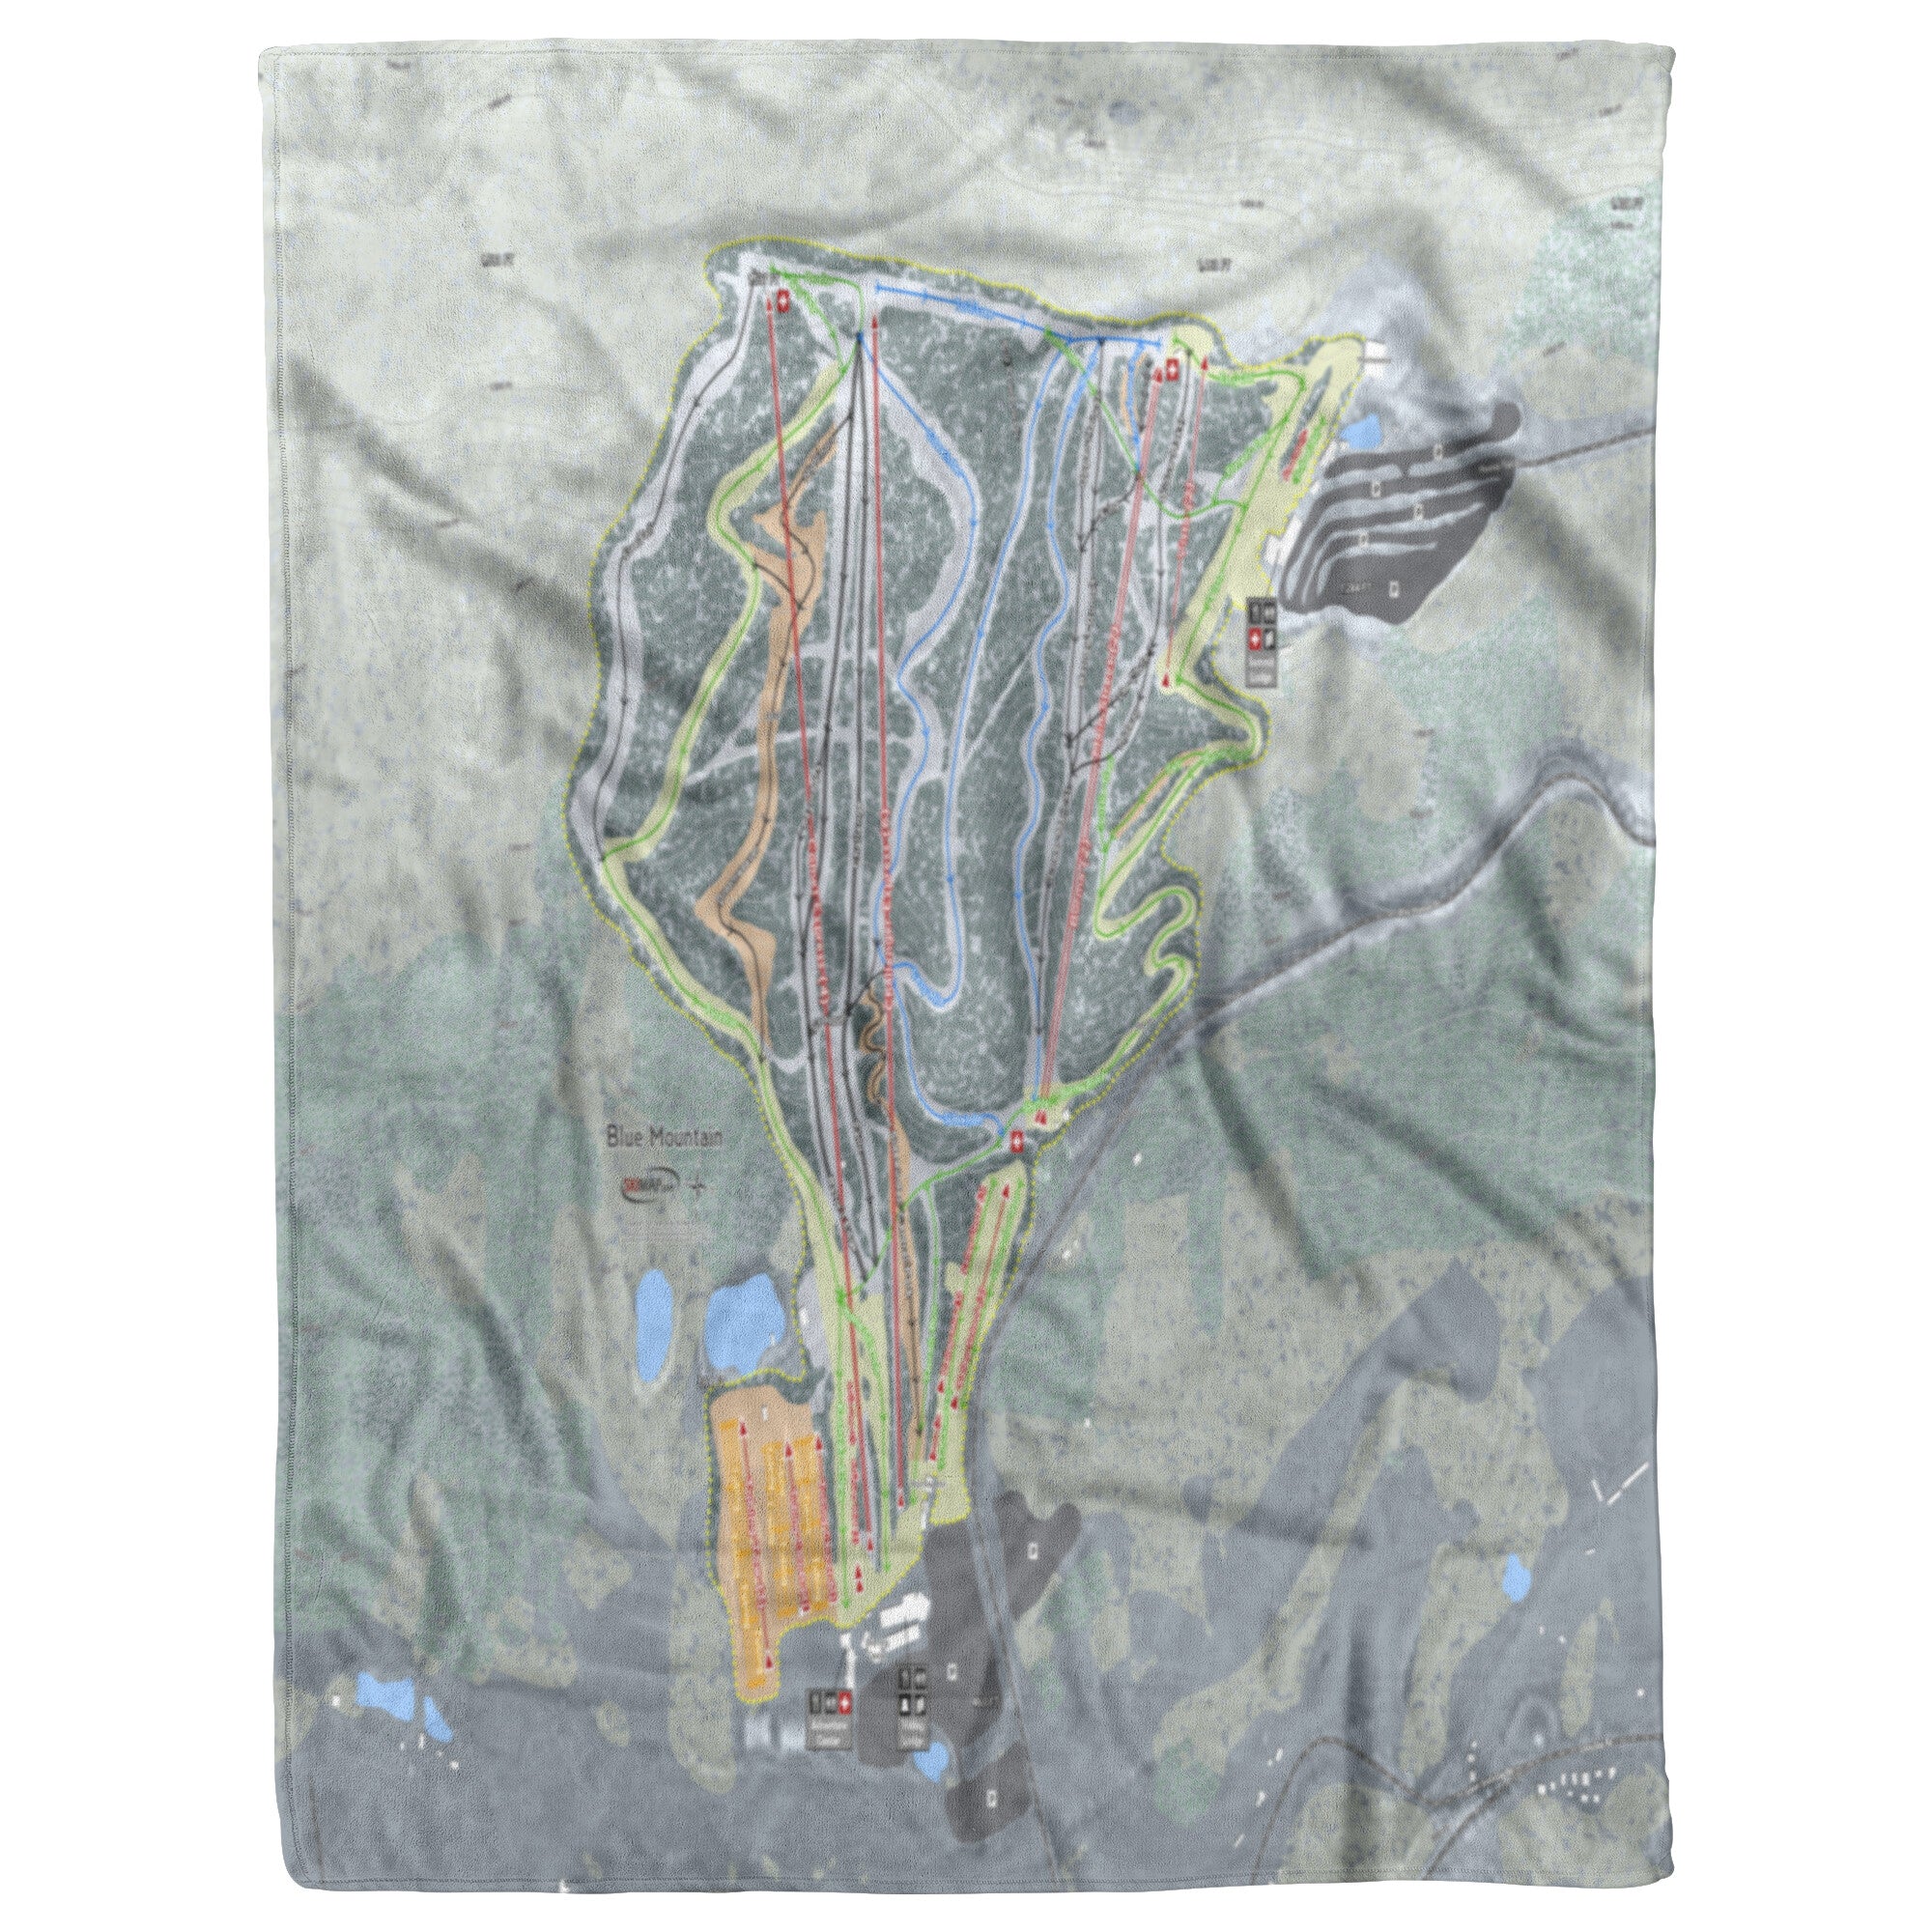 Blue Mountain, Pennsylvania Ski Trail Map Blanket